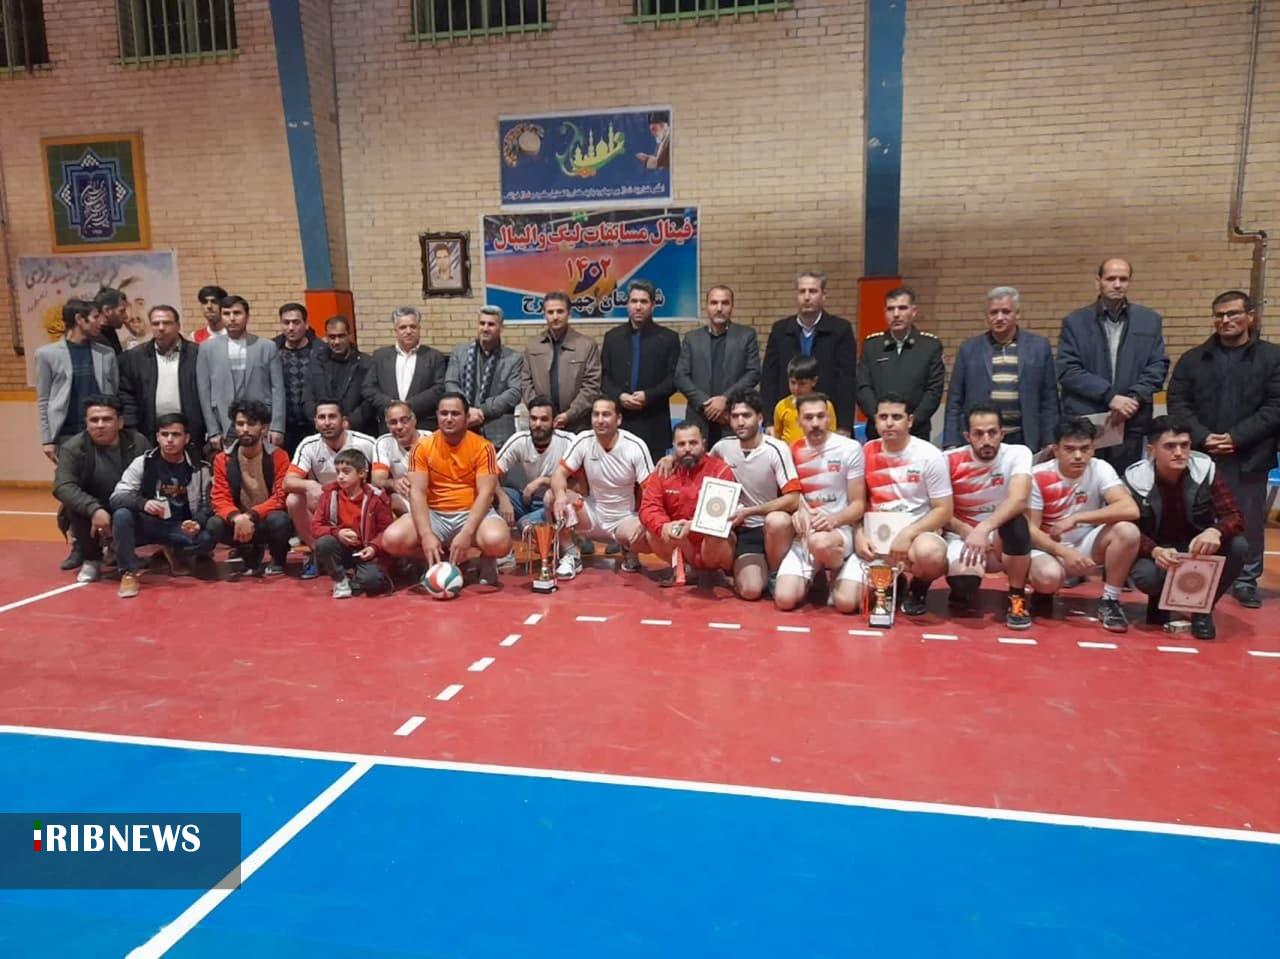 پایان رقابتهای لیگ والیبال چهاربرج با قهرمانی تیم آرکا